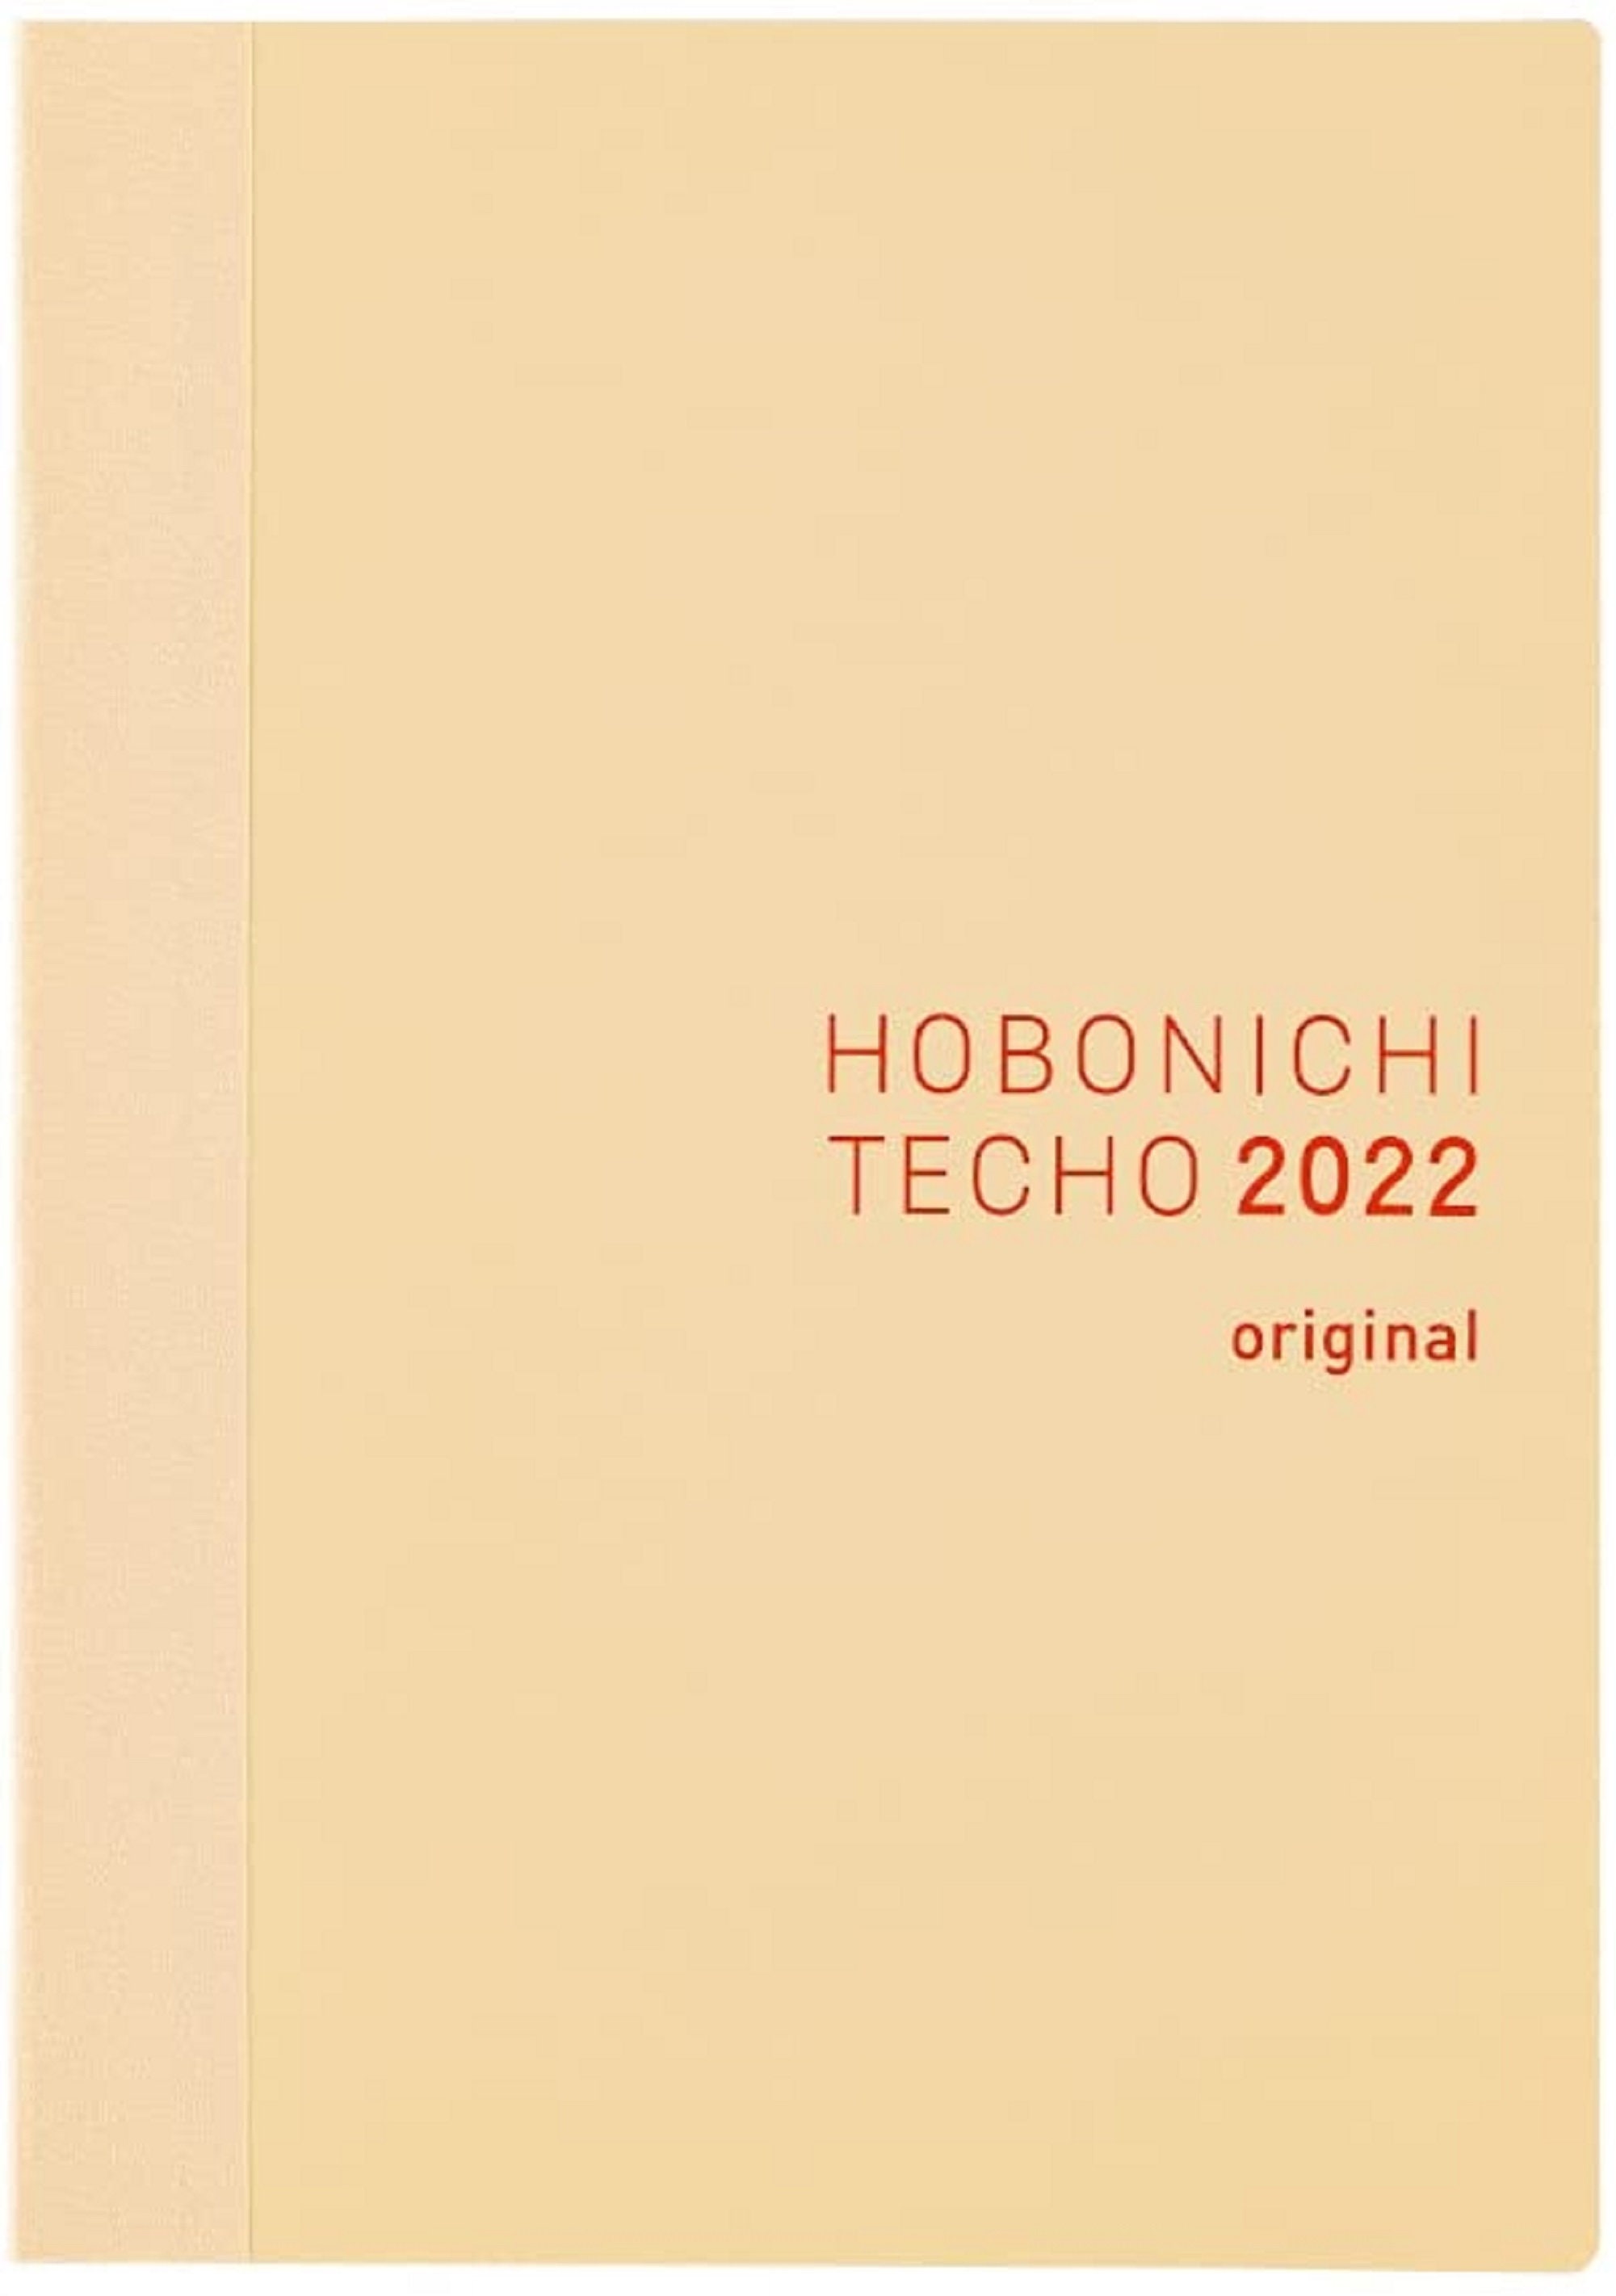 Monday-Start English 2022 Hobonichi Techo Planner Book January Start A6 Size 